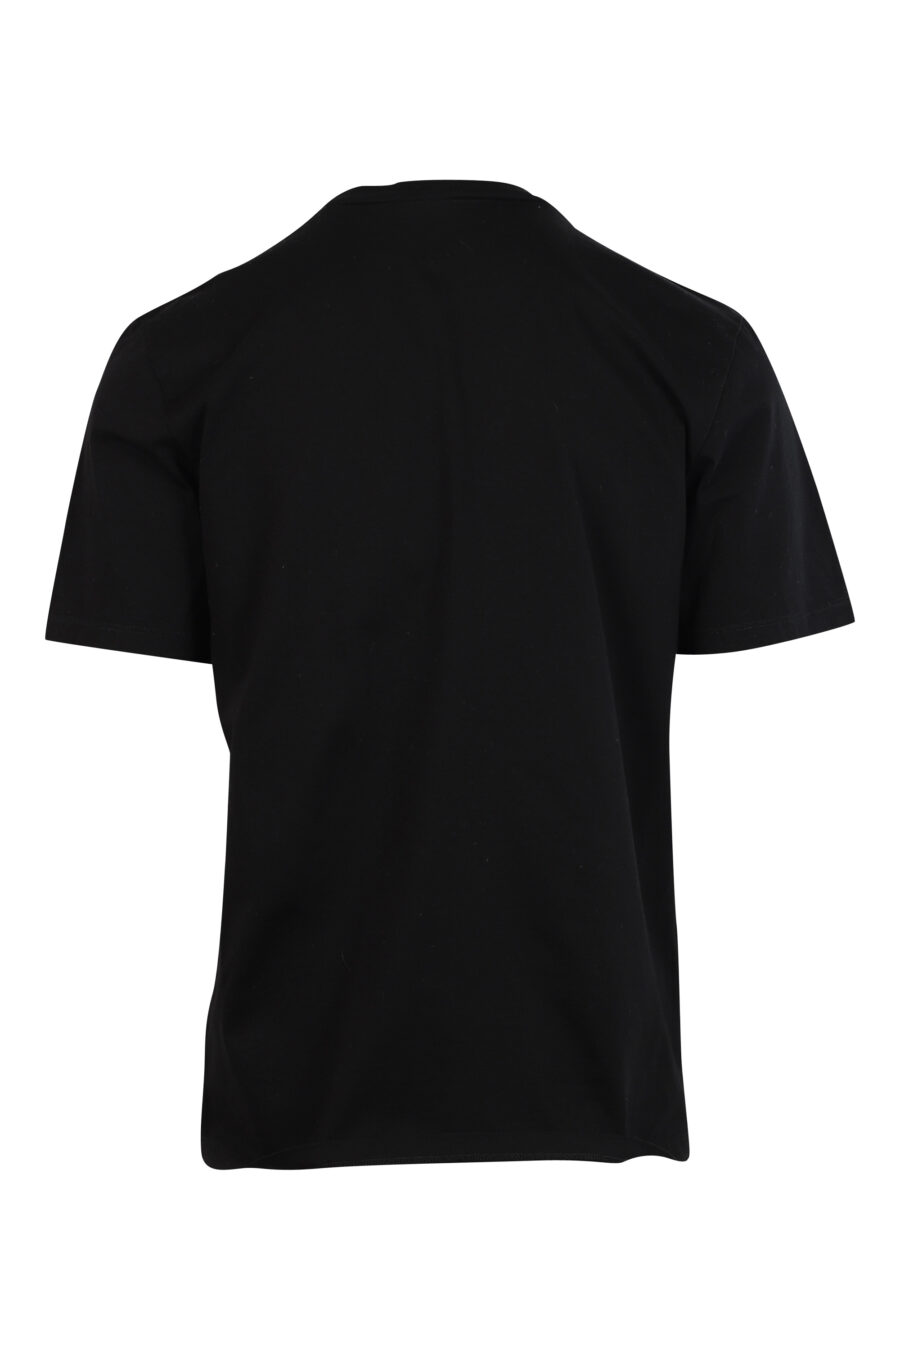 Camiseta negra con maxilogo en relieve negro - 8052134990285 2